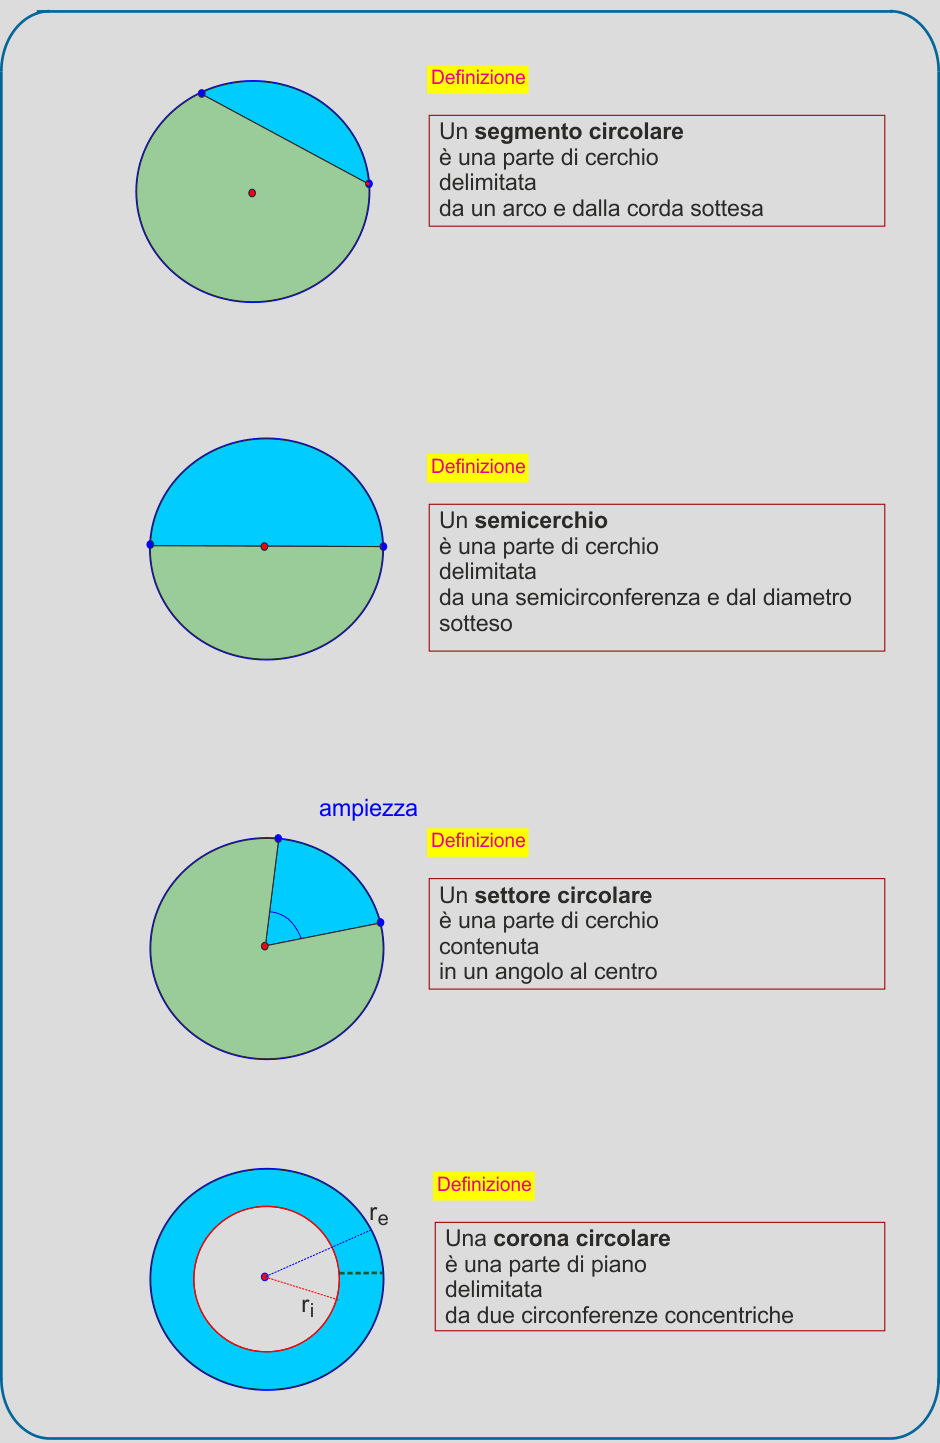 Segmento-settore-corona-circolare